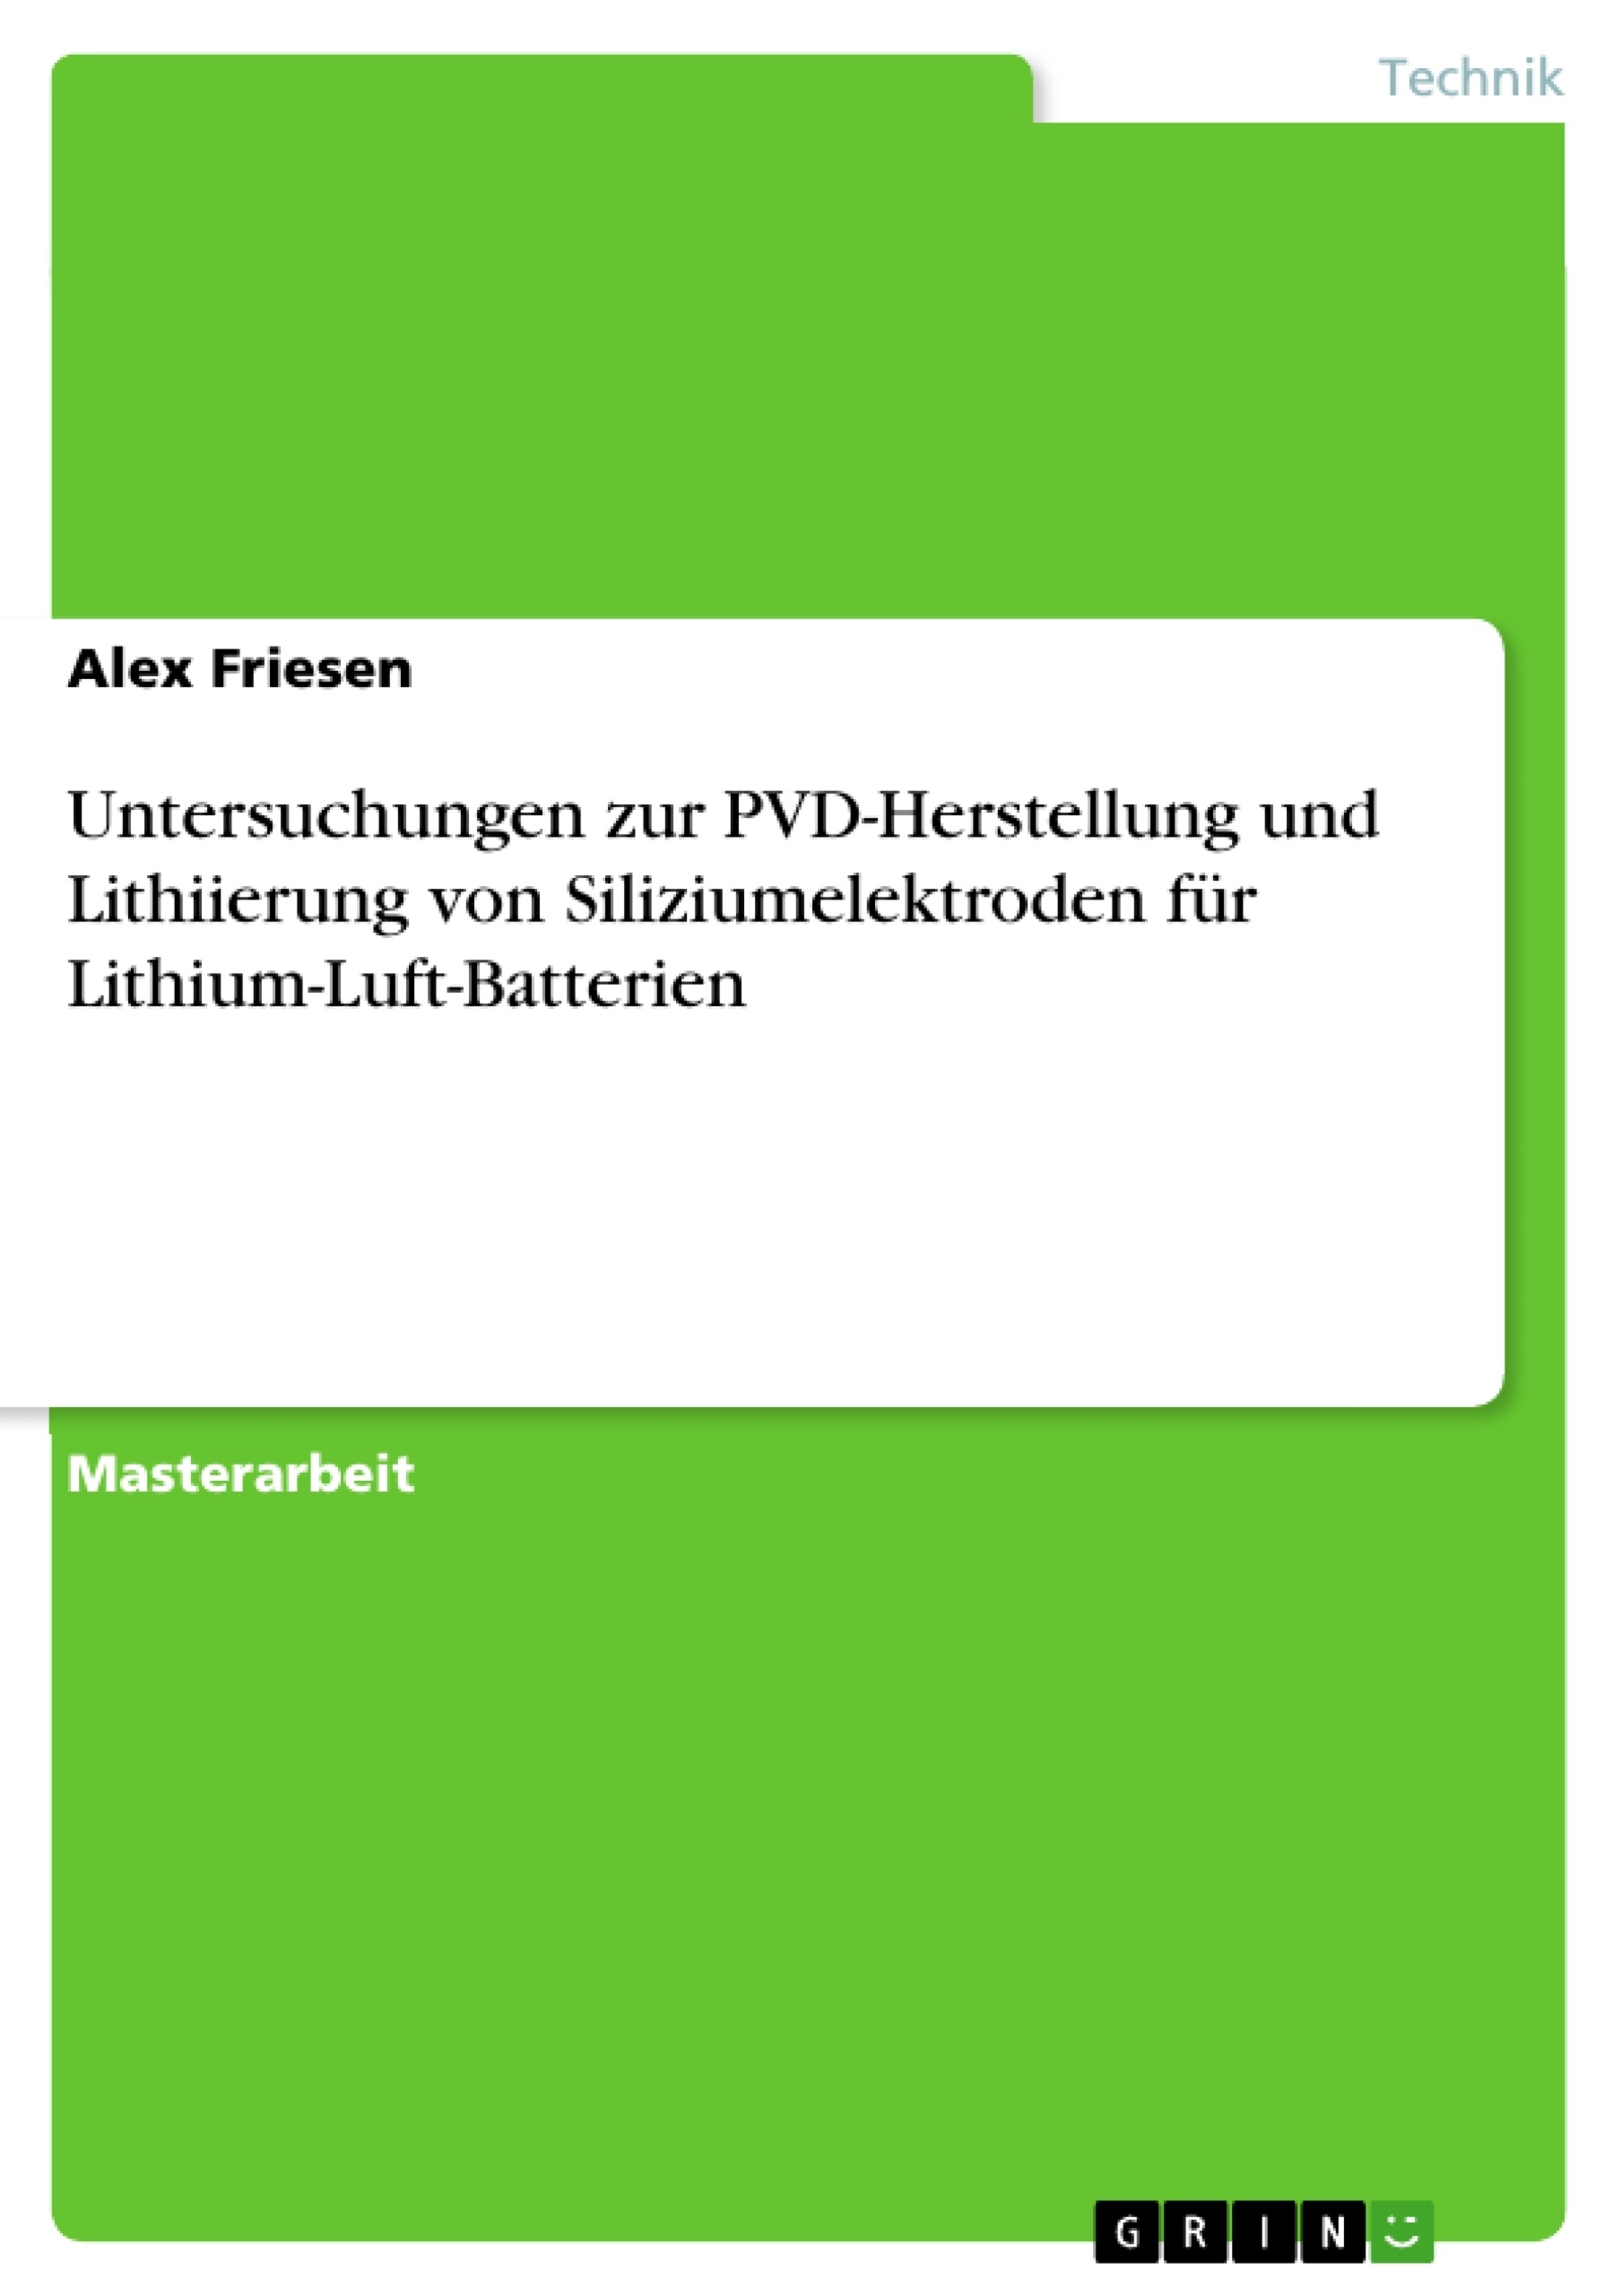 Titre: Untersuchungen zur PVD-Herstellung und Lithiierung von Siliziumelektroden für Lithium-Luft-Batterien